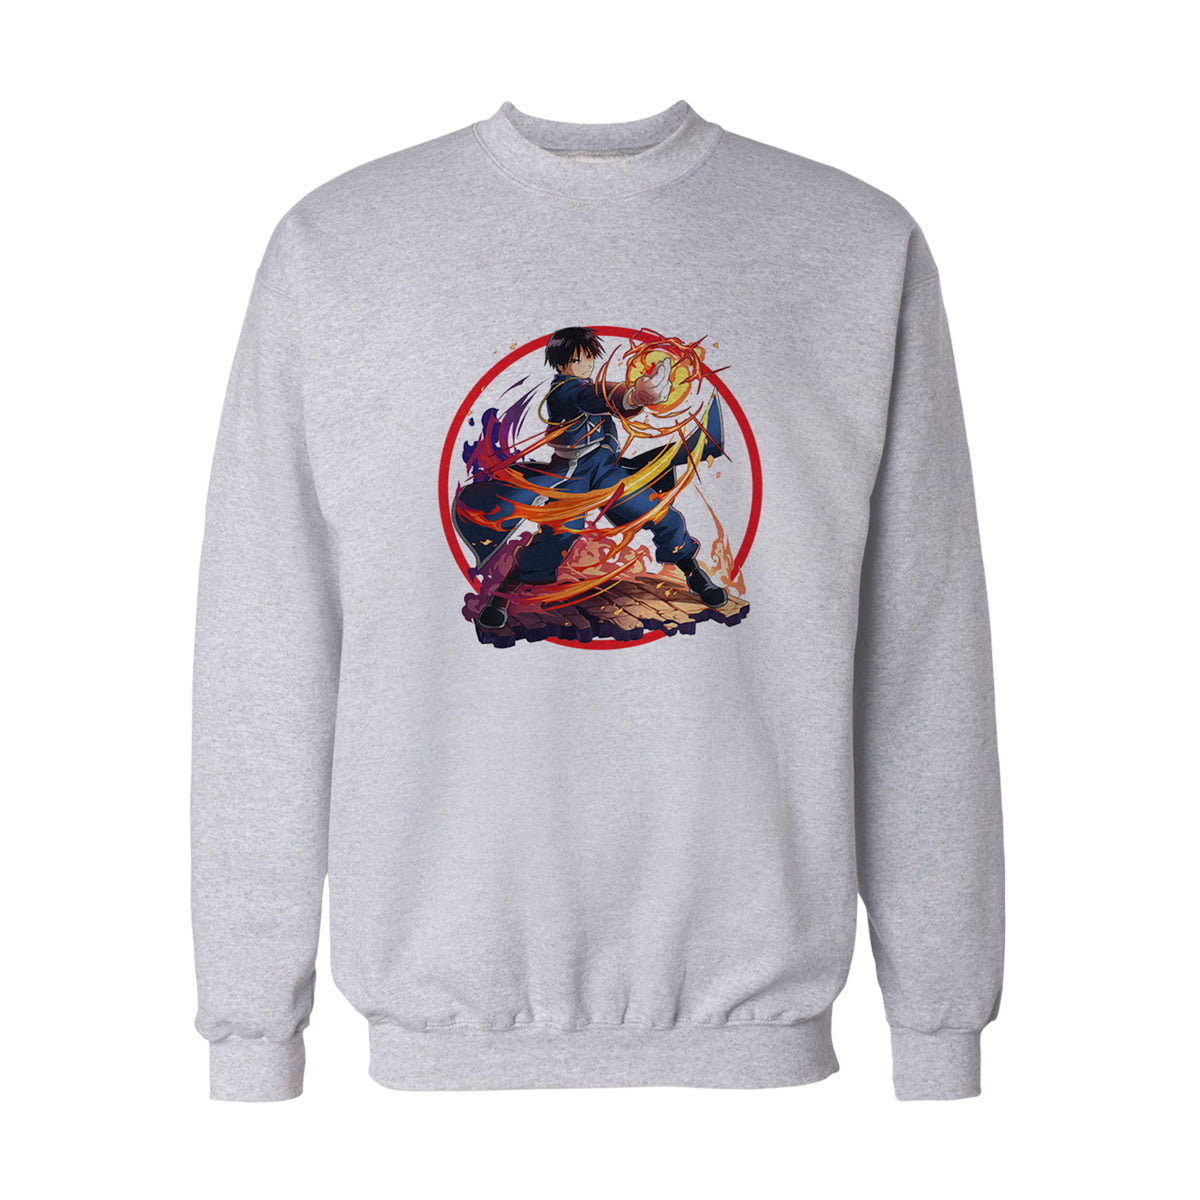 Fullmetal Alchemist No6 Sweatshirt B